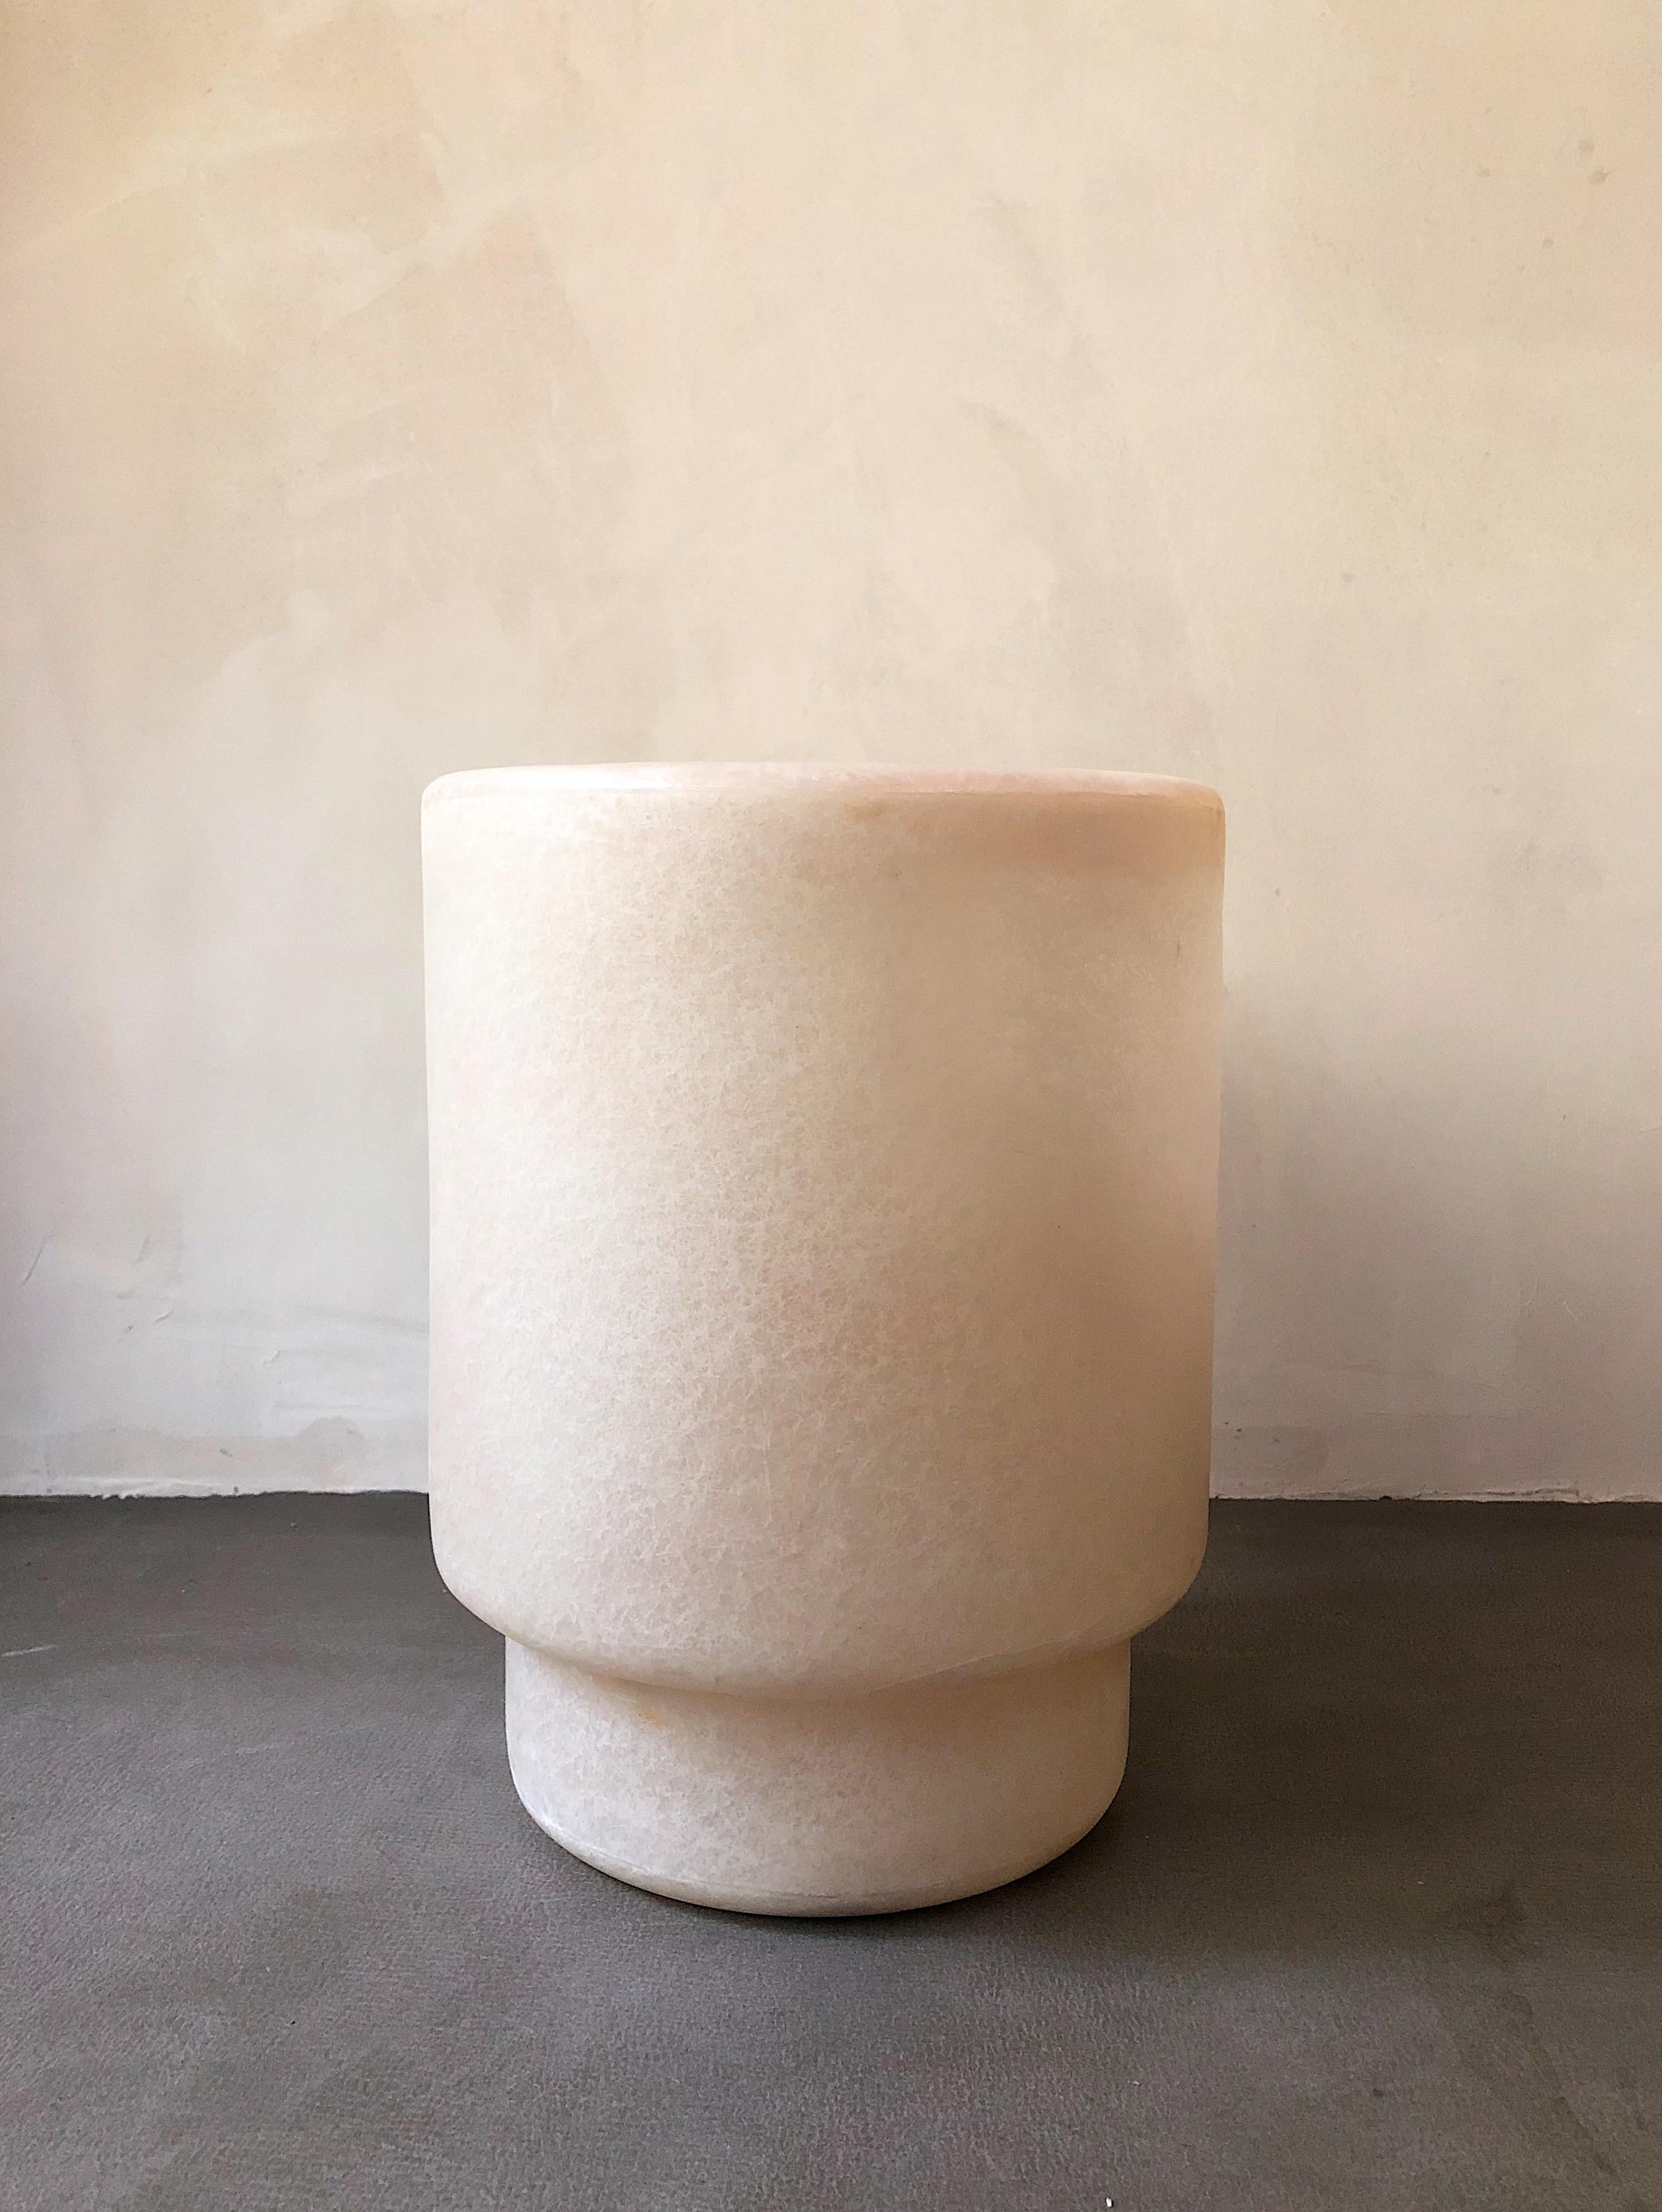 Weiße Tong-Vase von kar
MATERIALIEN: FRP
Abmessungen: 26 x 26 x 34 cm.
*Dieses Stück ist für den Außenbereich geeignet.
Eine glatte Form, die sich in jeden Raum integrieren lässt. Vielseitig verwendbar: als Blumenvase, als Behälter für Entwürfe,